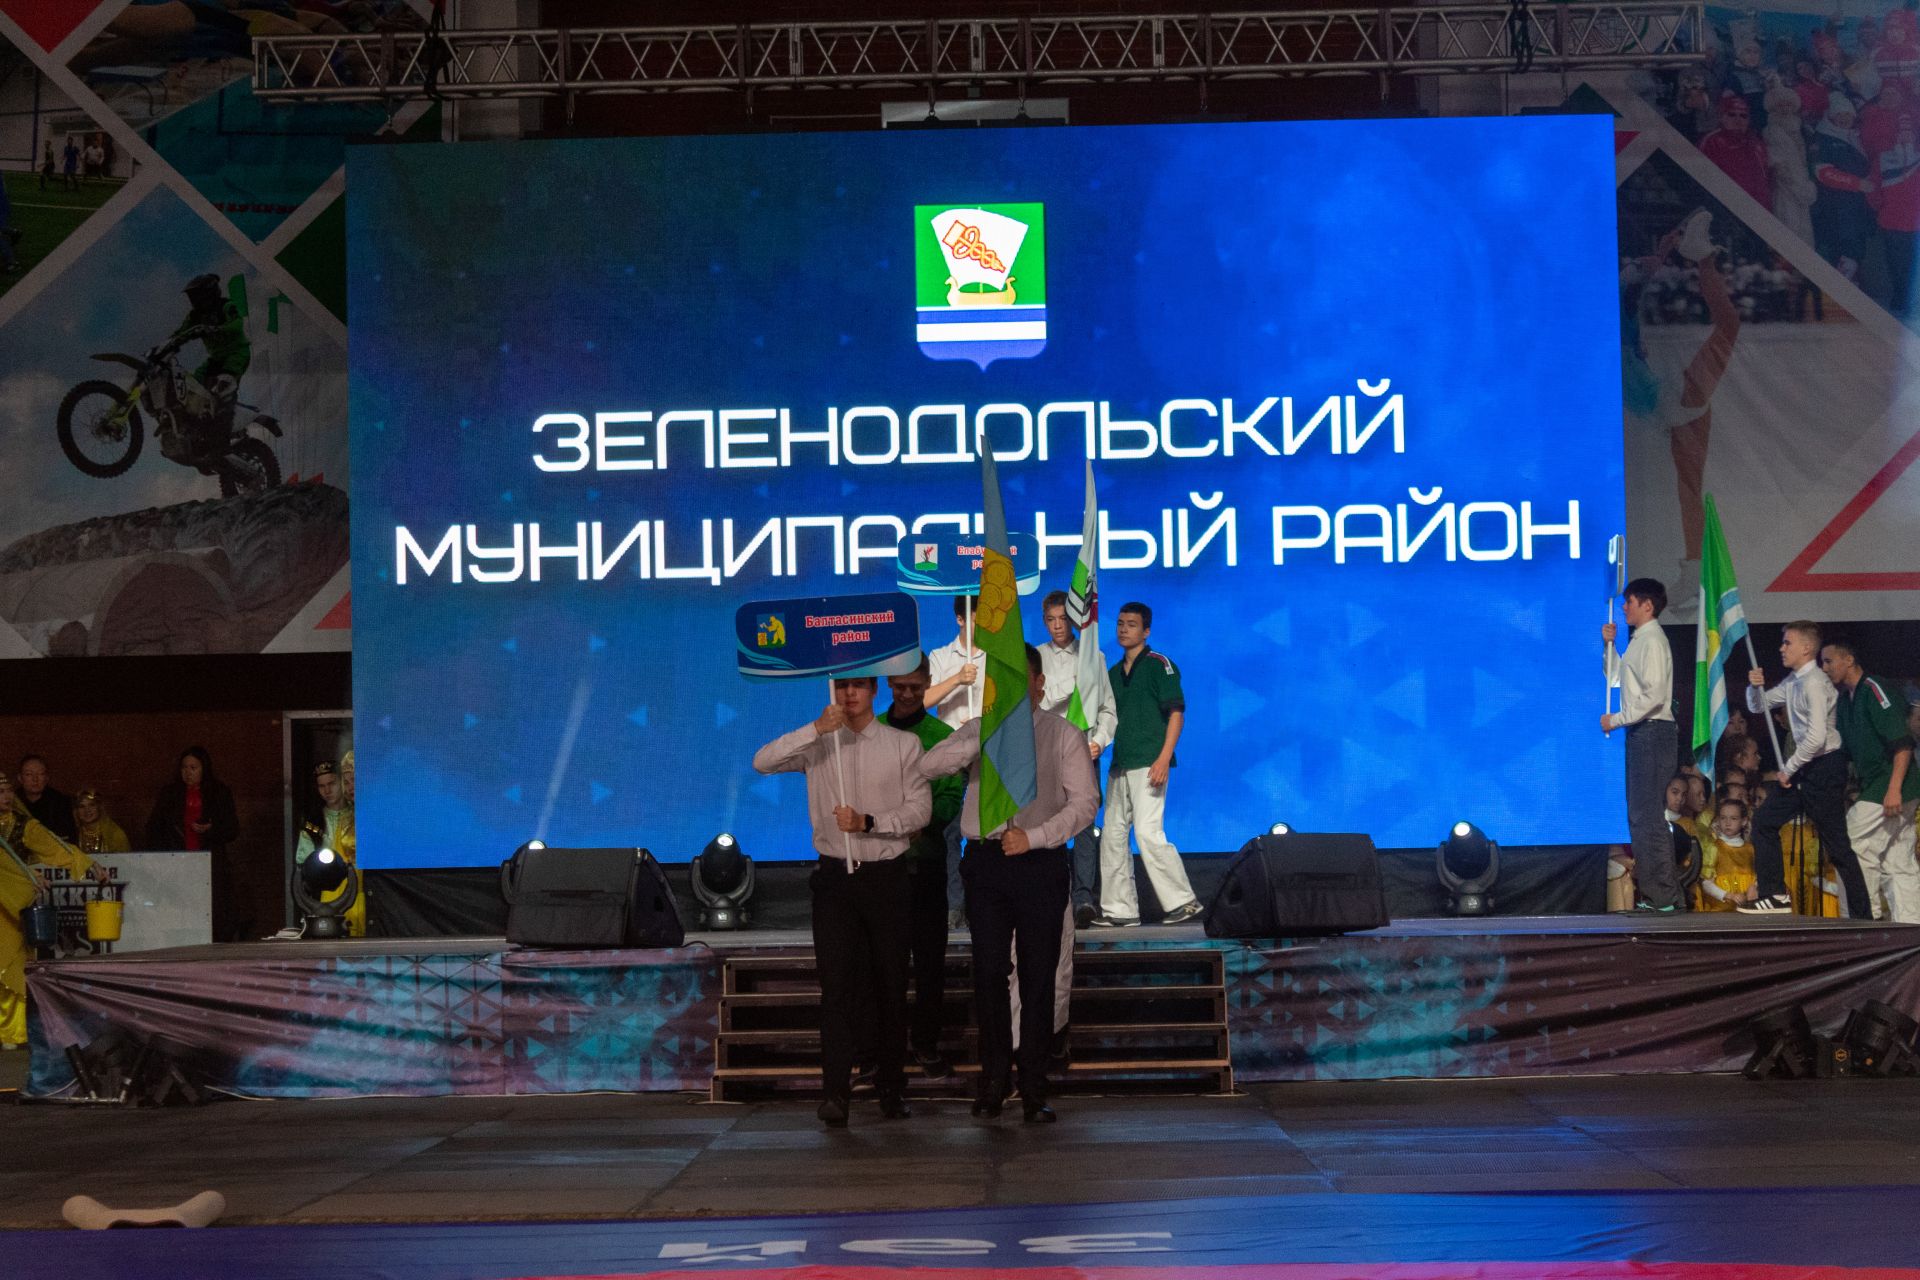 Заинские борцы принесли району победу во всероссийских соревнованиях по корэш